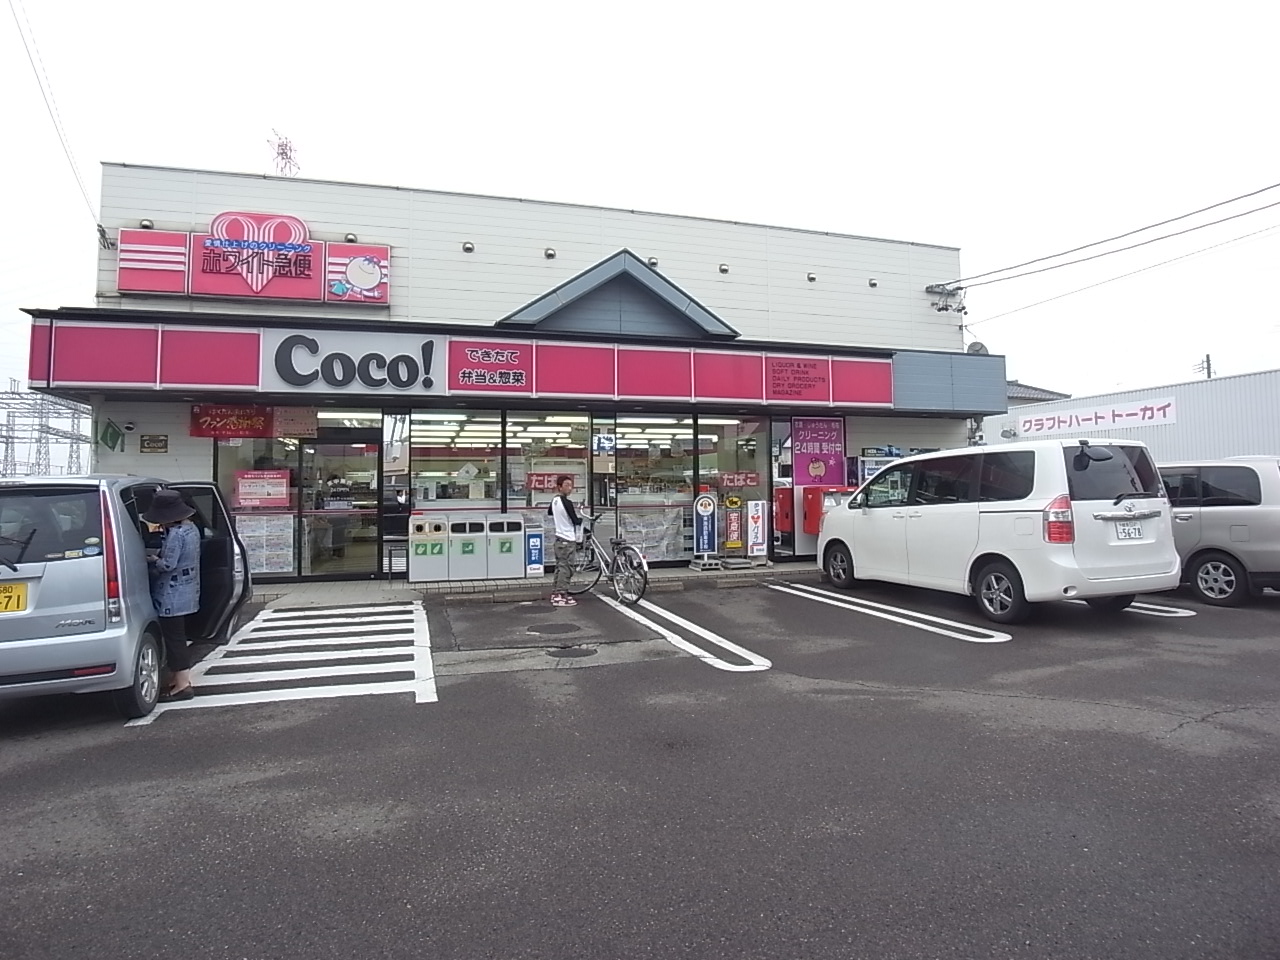 Convenience store. 531m to the Coco store Fukuda store (convenience store)